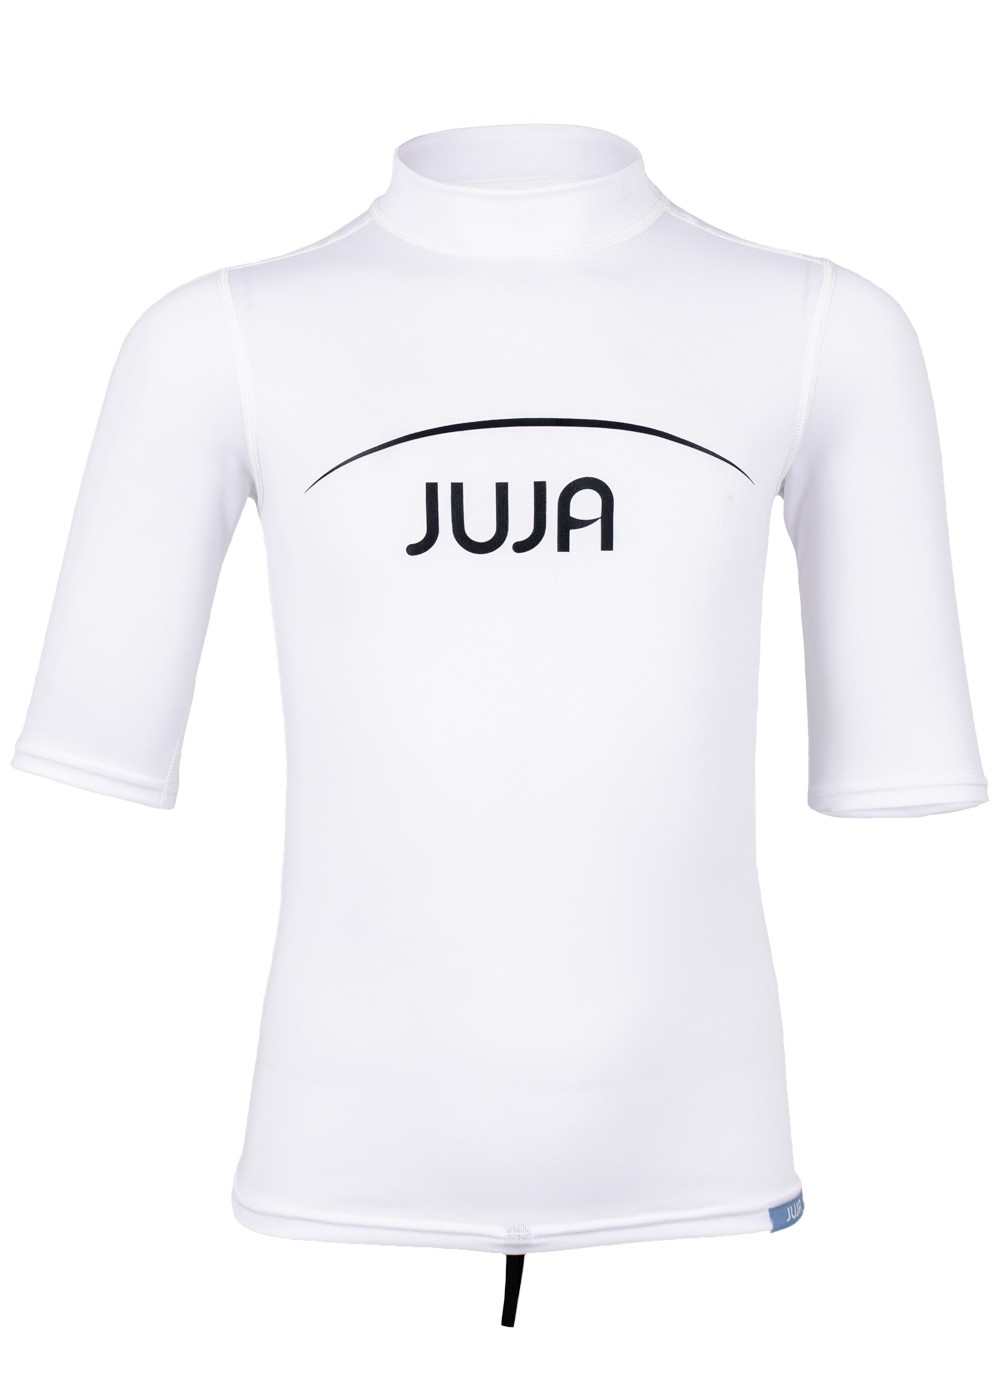 JuJa - UV swim shirt for children - short-sleeve - white